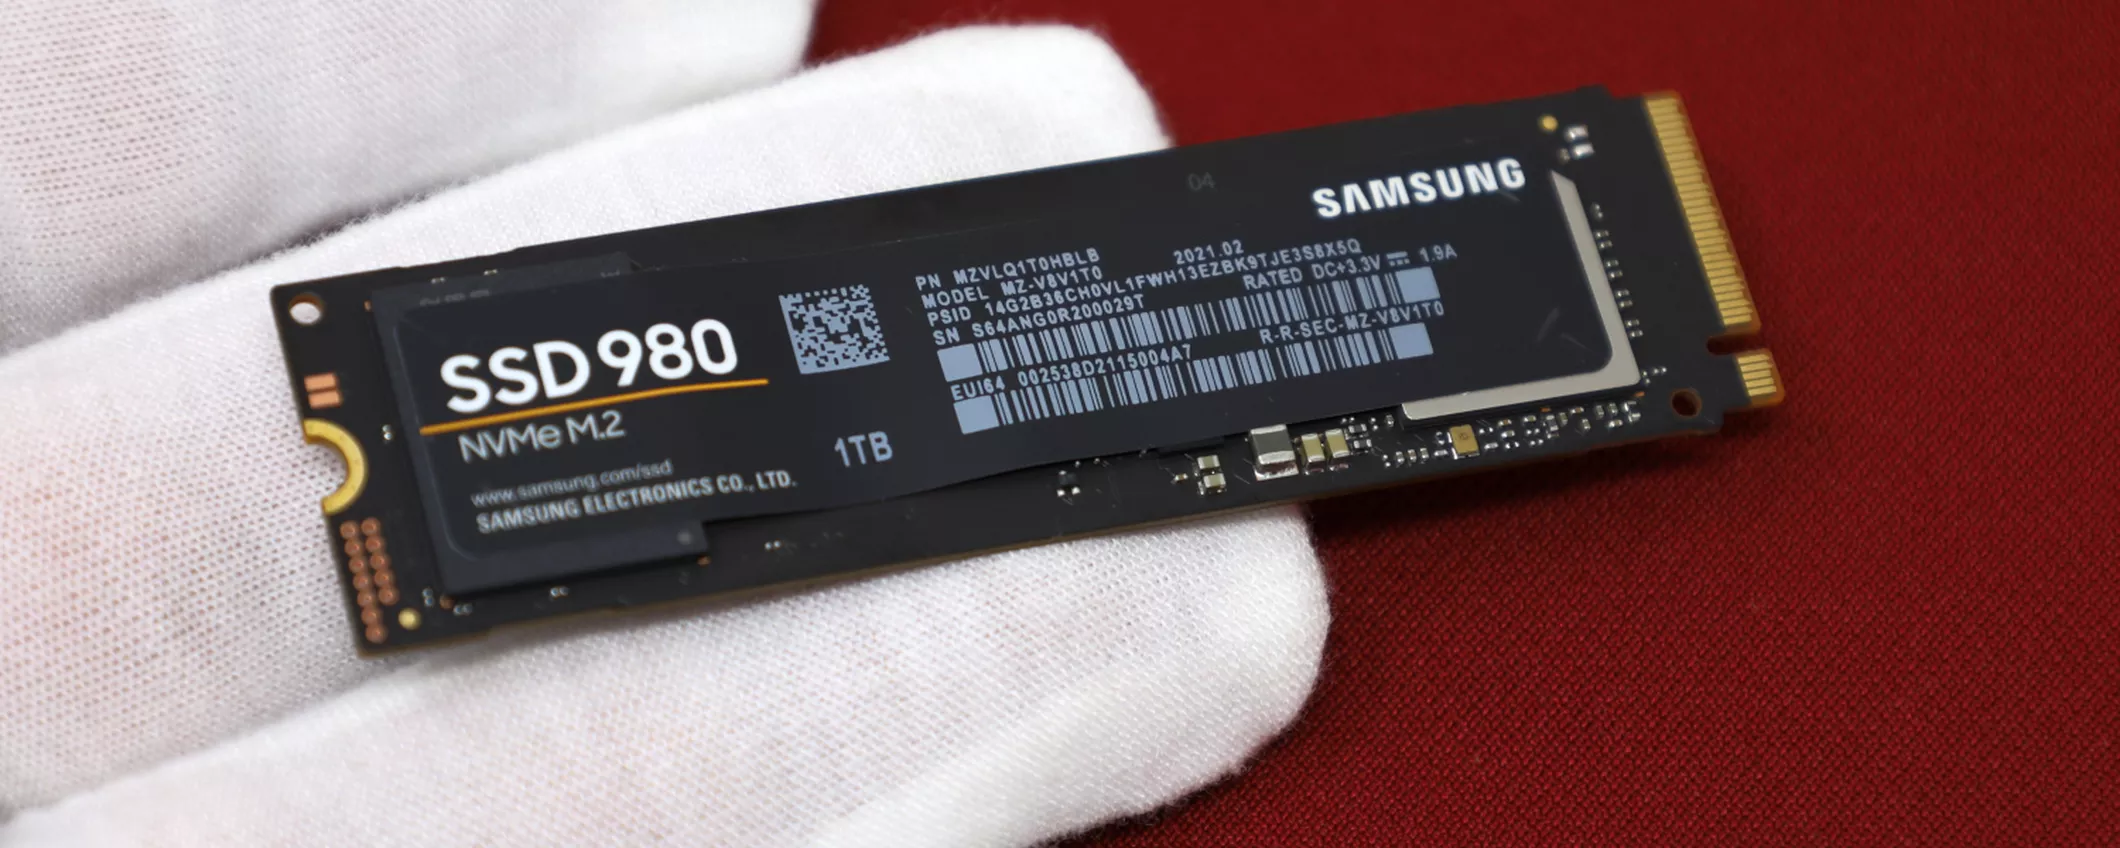 SCONTO FOLLE DEL 56% sulla SSD Samsung da 1TB: solo per OGGI!